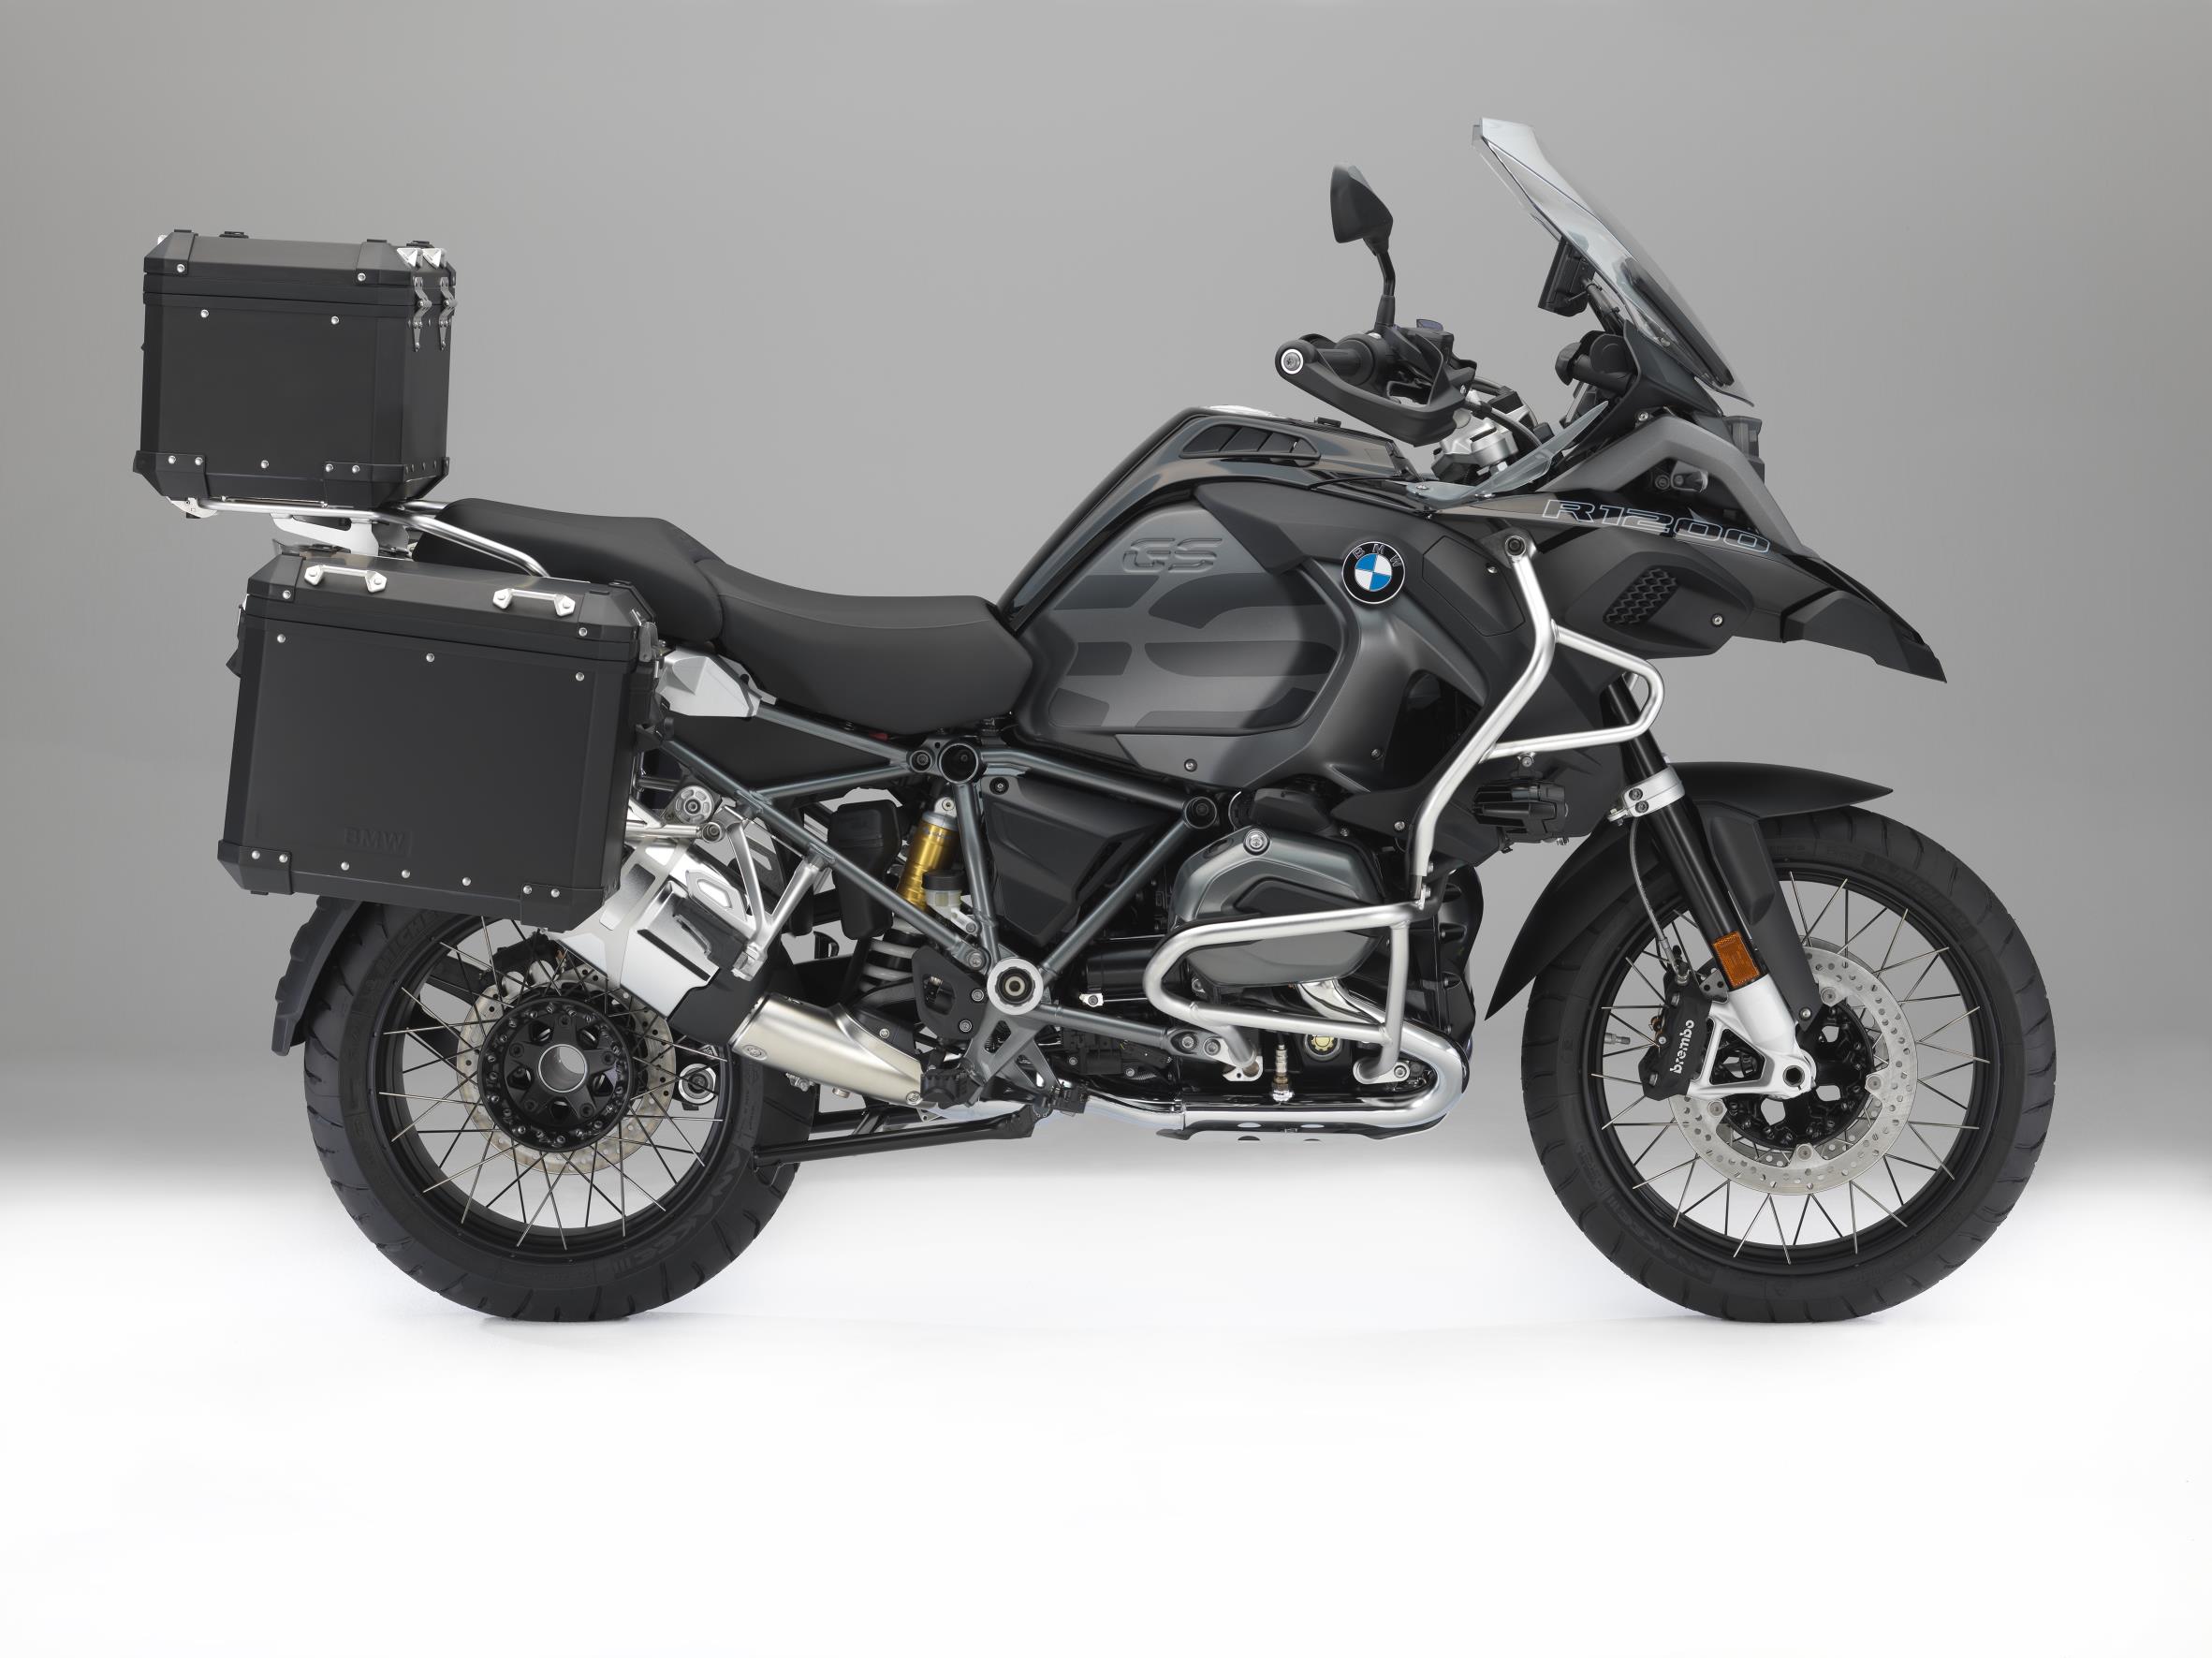 Accesorios Originales para BMW Motorrad